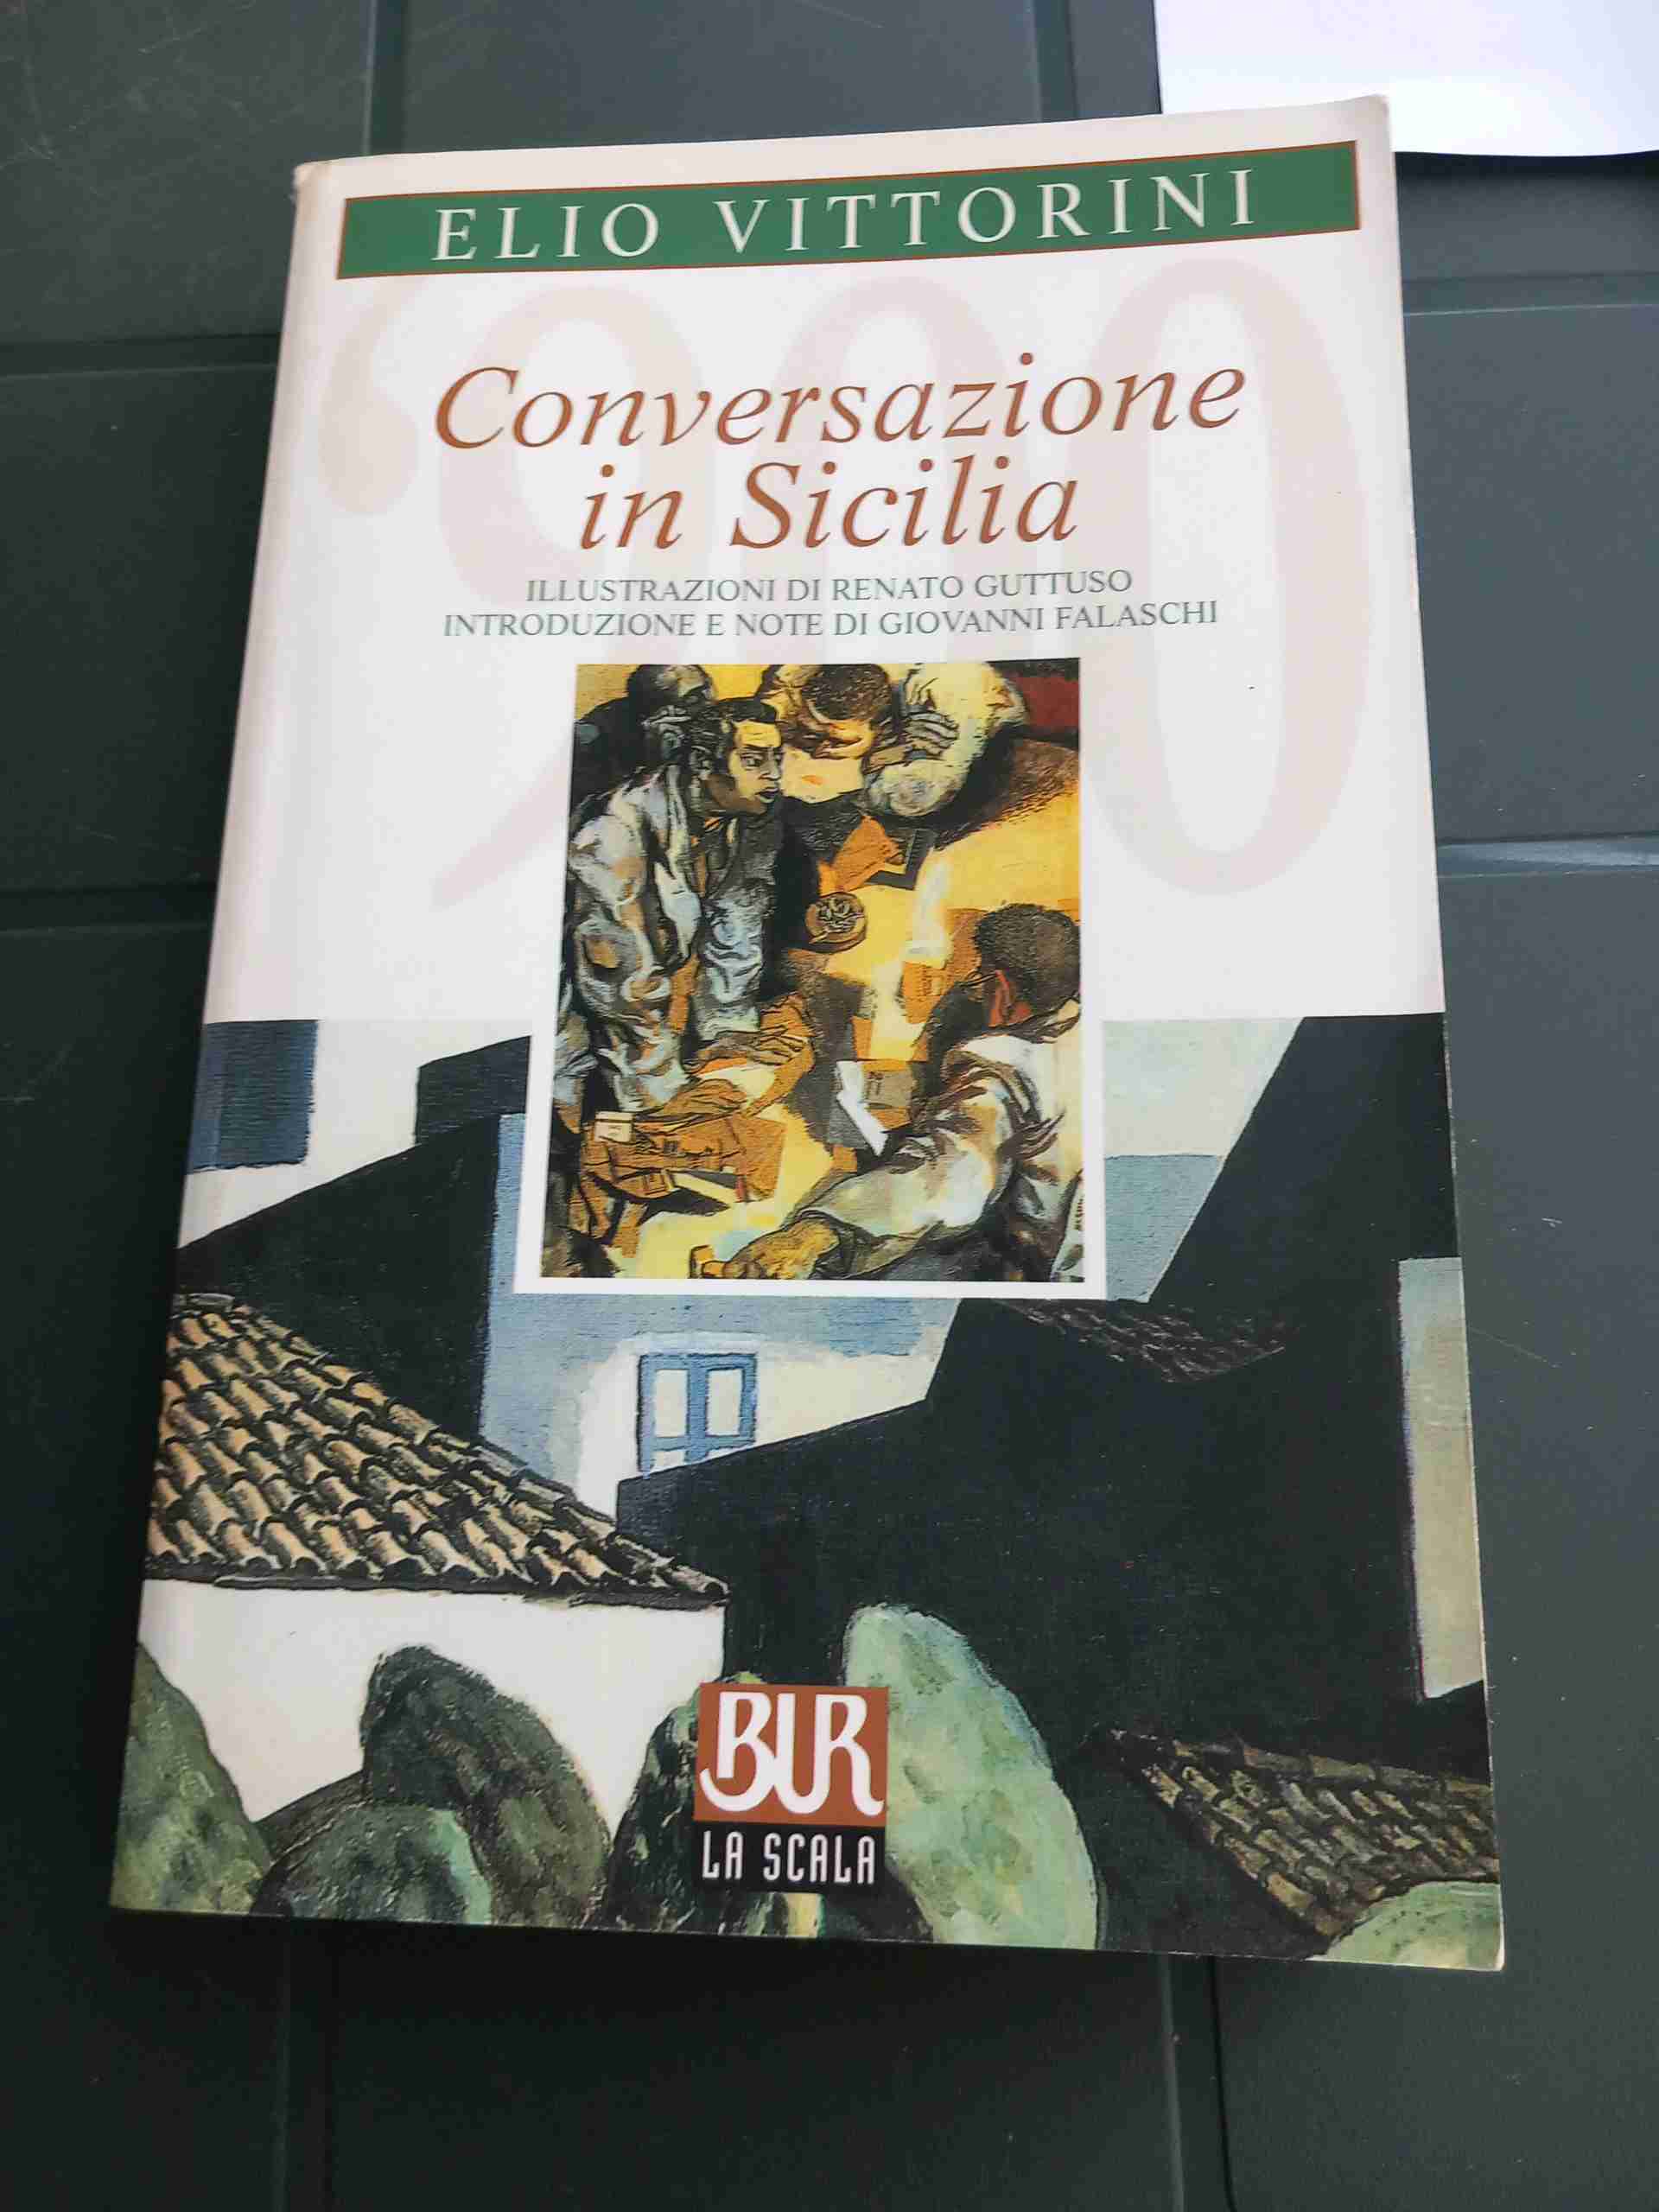 Conversazione in Sicilia. In appendice una corrispondenza immaginaria dal fronte spagnolo